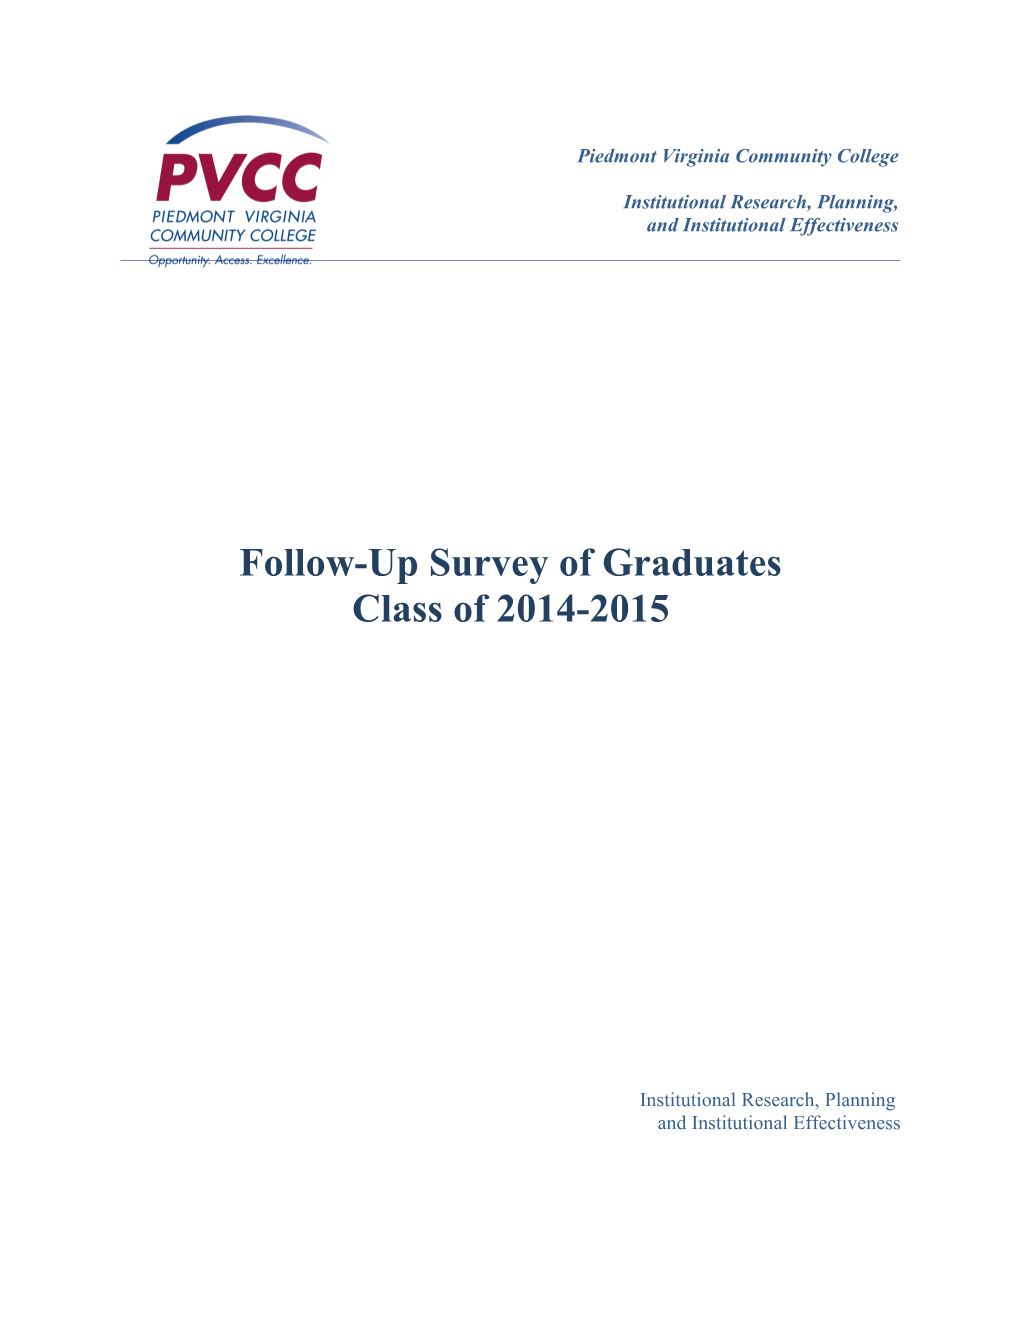 Follow-Up Survey of Graduates: Class of 2014-2015